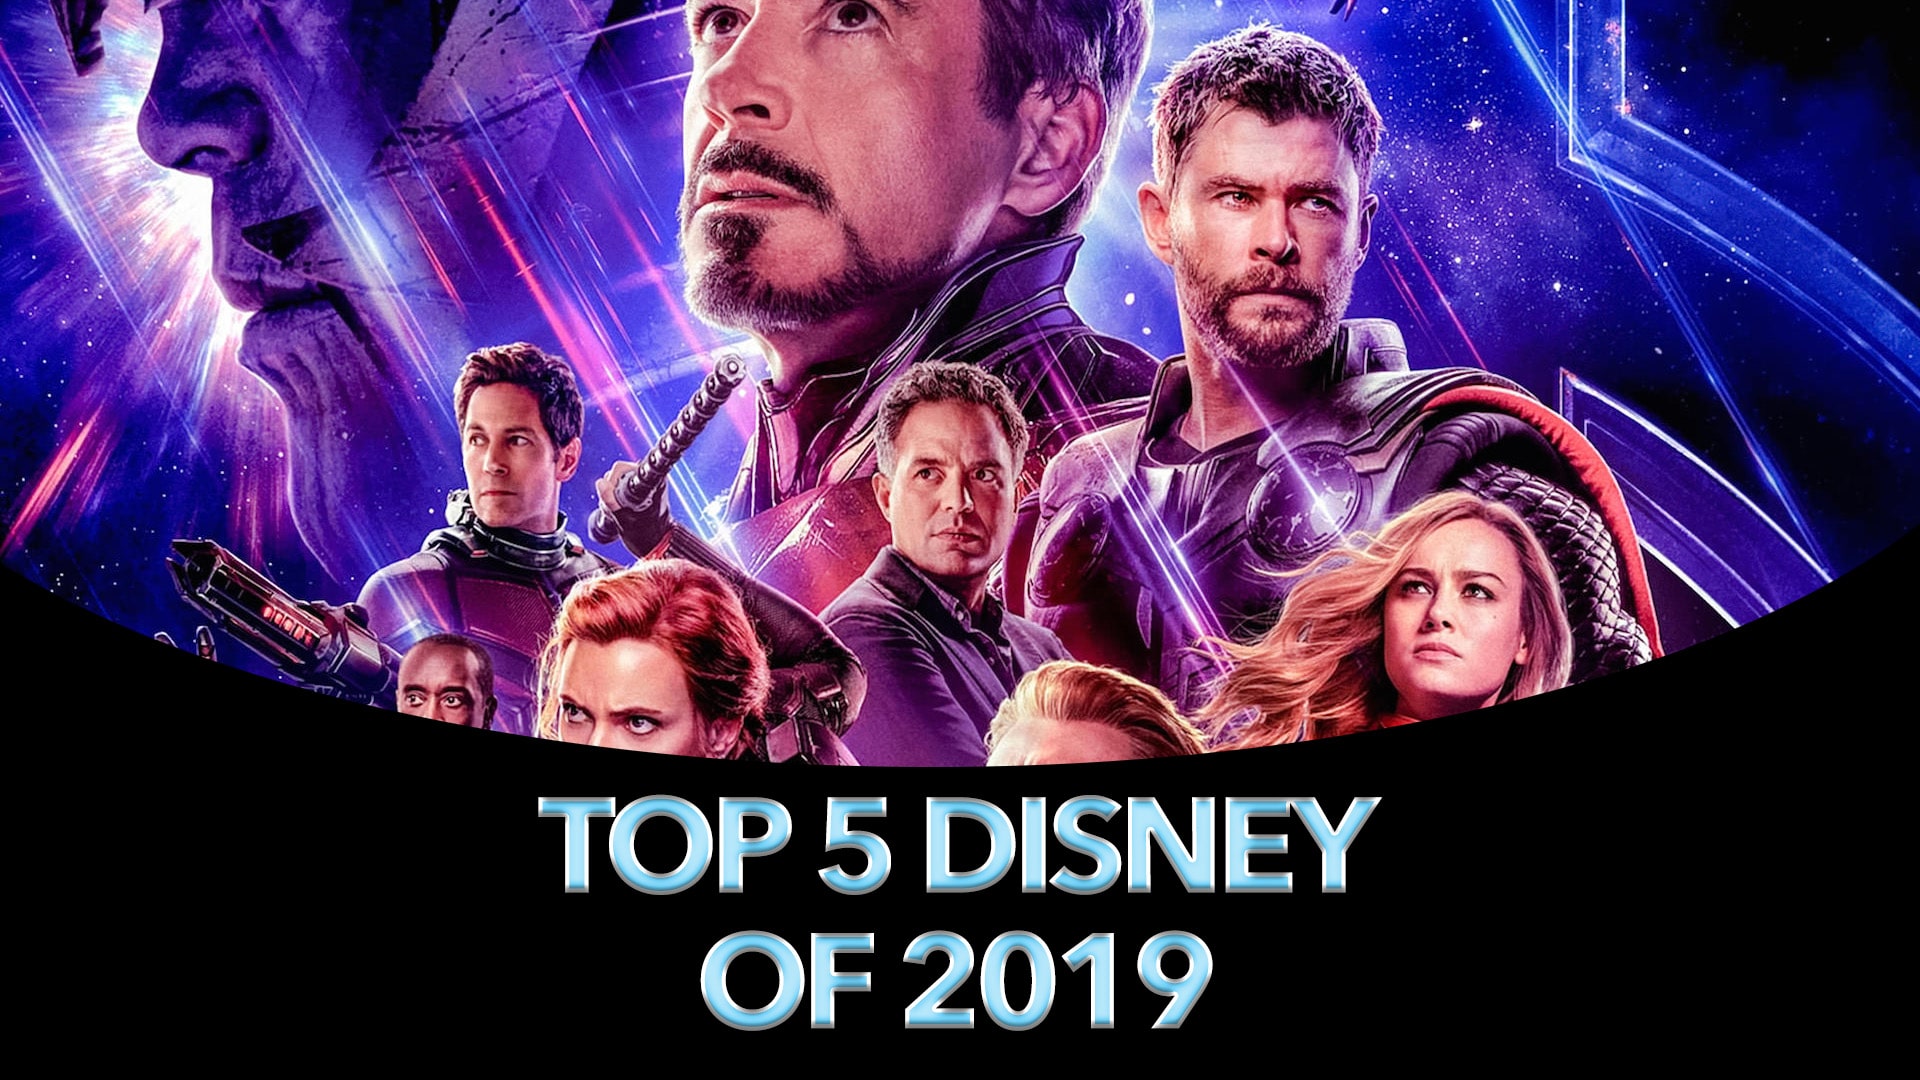 Top 5 Disney Stories of 2019 – #3: Avengers Endgame